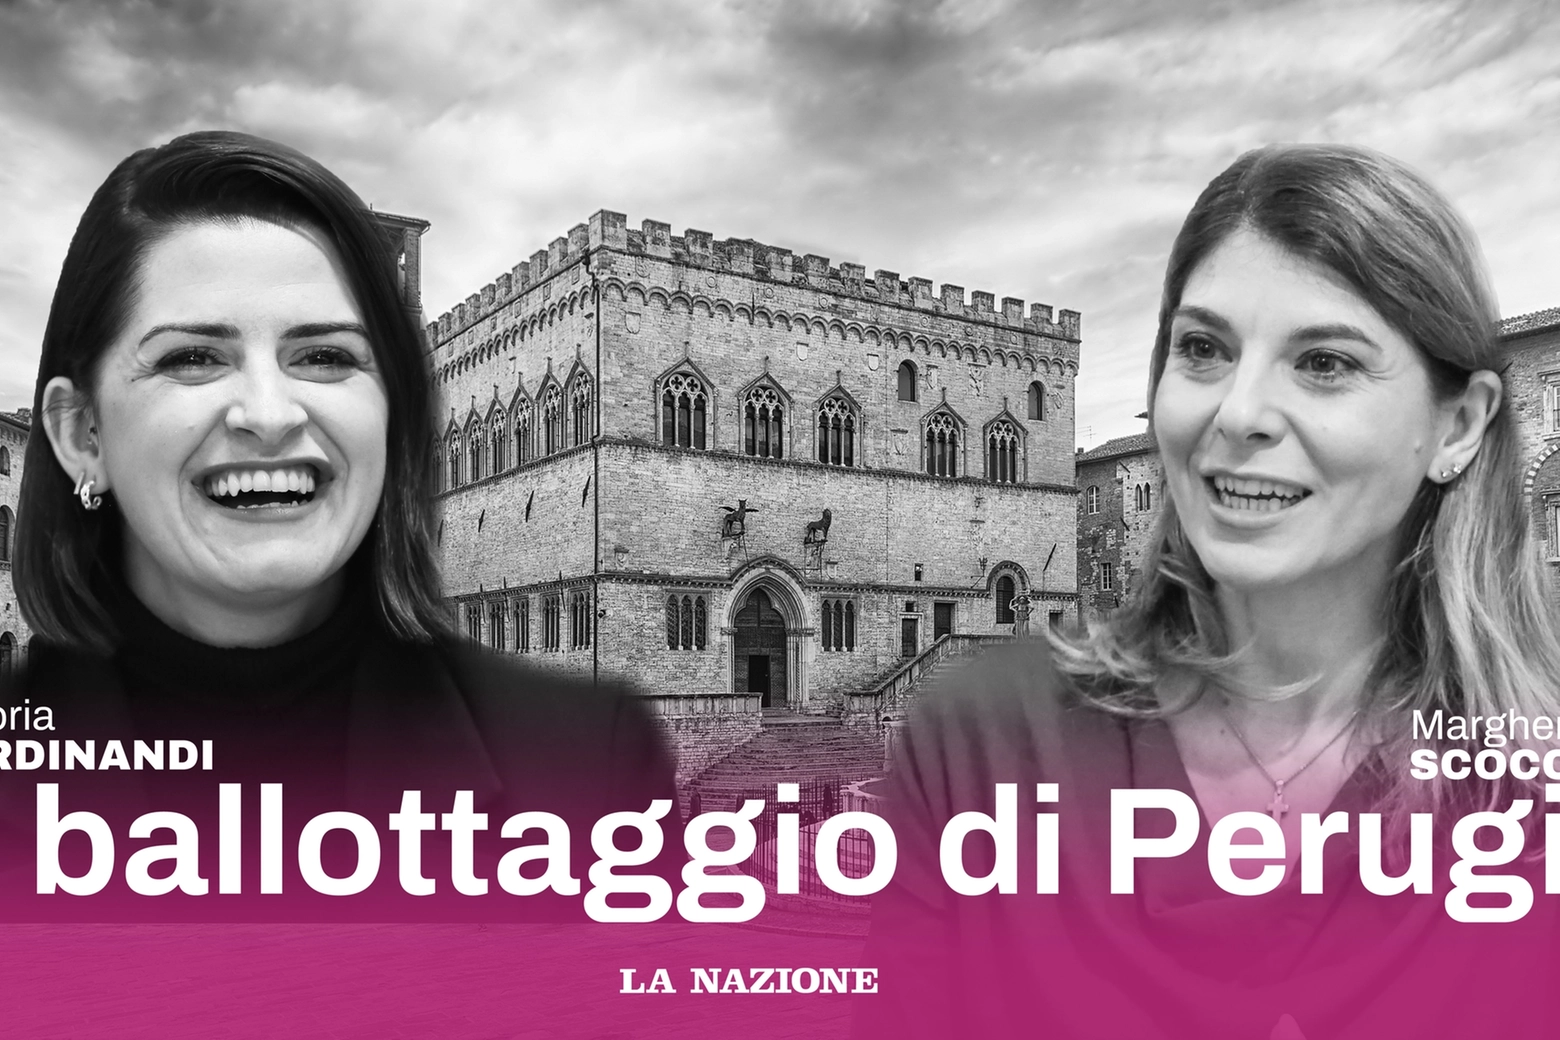 Il ballottaggio di Perugia: Scoccia e Ferdinandi si contendono la guida della città nella sfida testa a testa